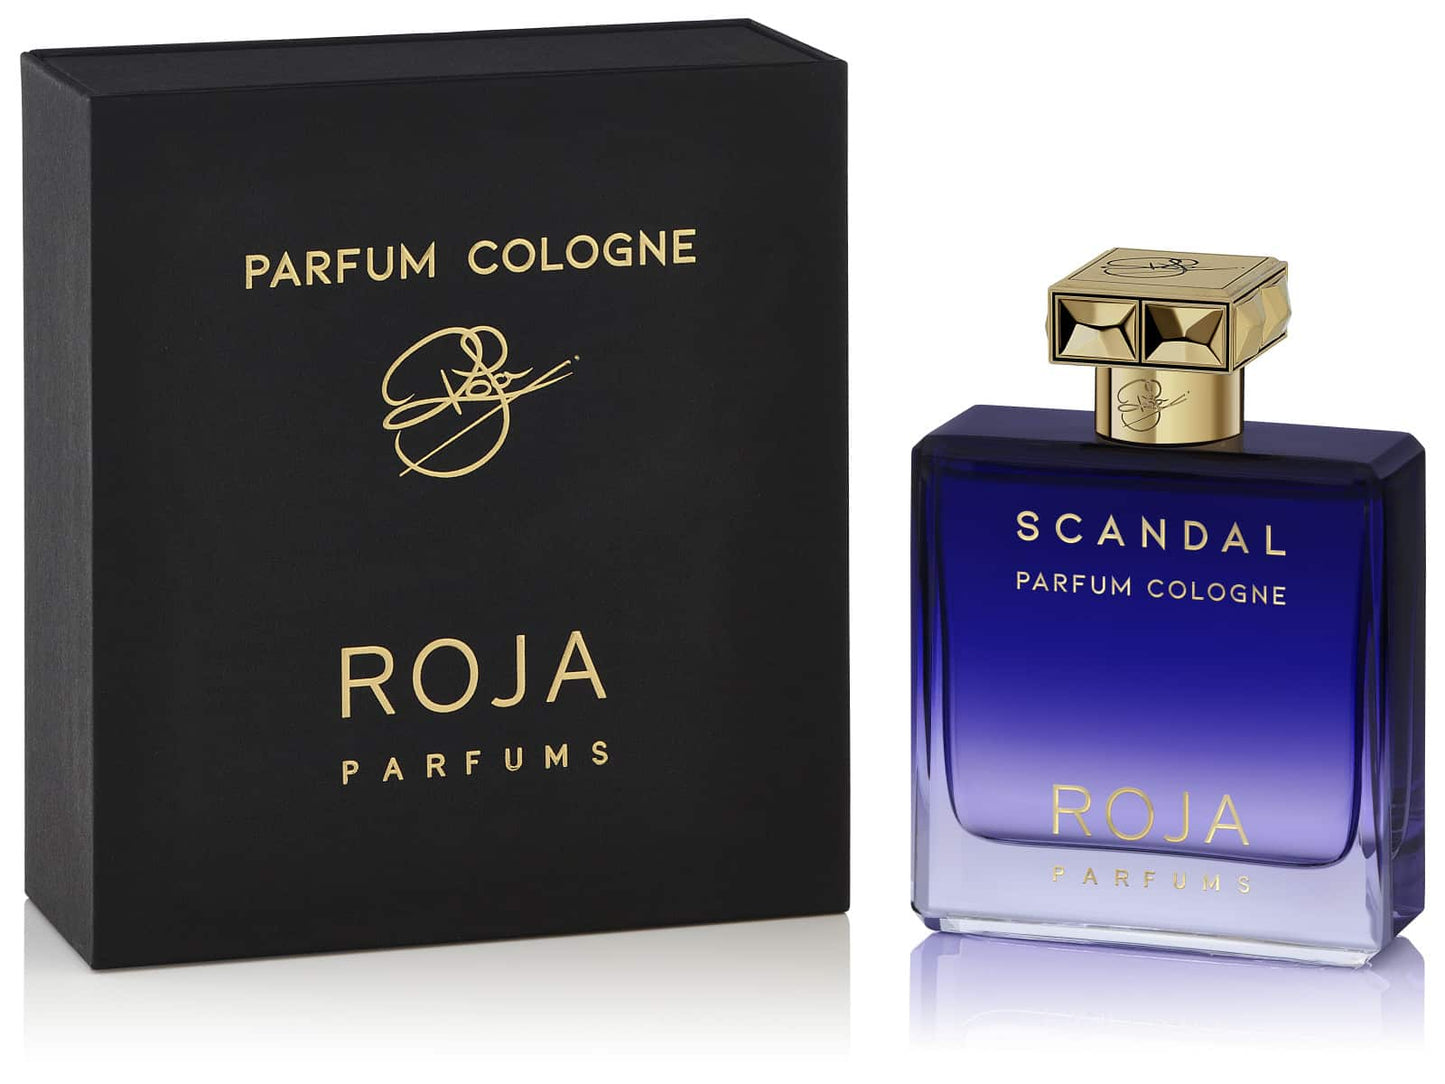 Roja - Scandal Pour Homme Parfum Cologne.